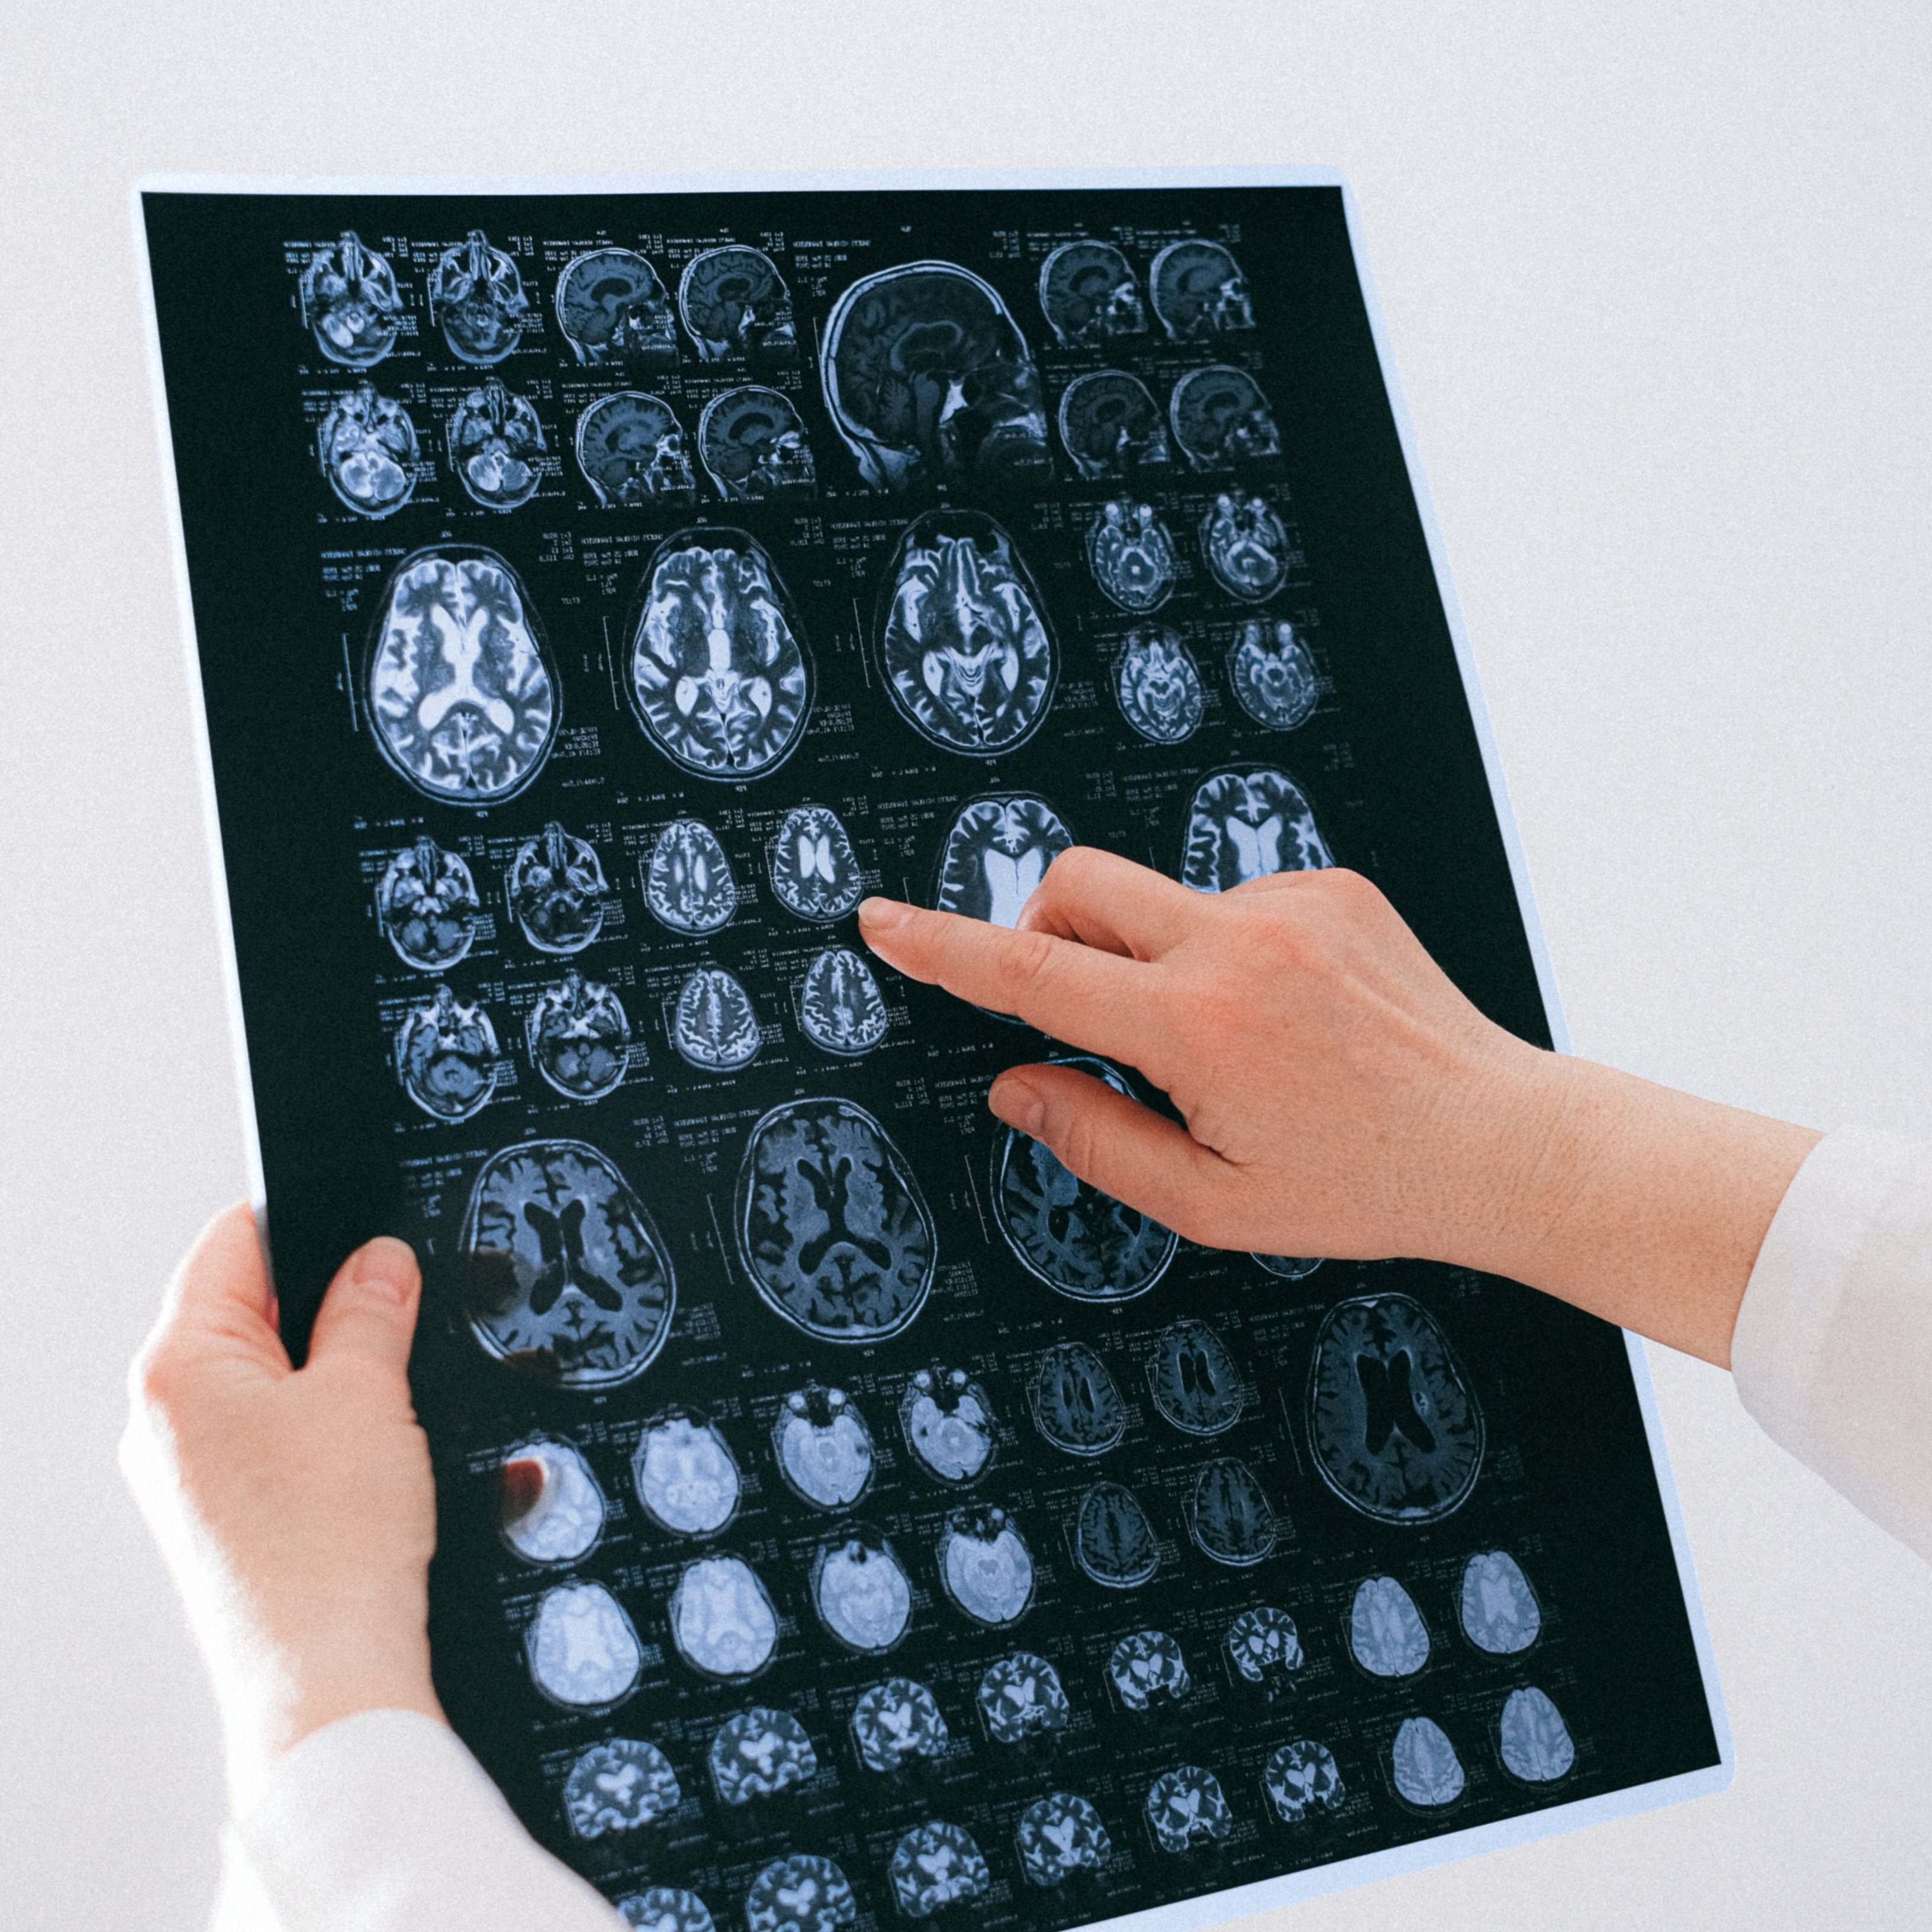 Un nuevo mapeo cerebral para ver el porqué de los trastornos neuropsiquiátricos